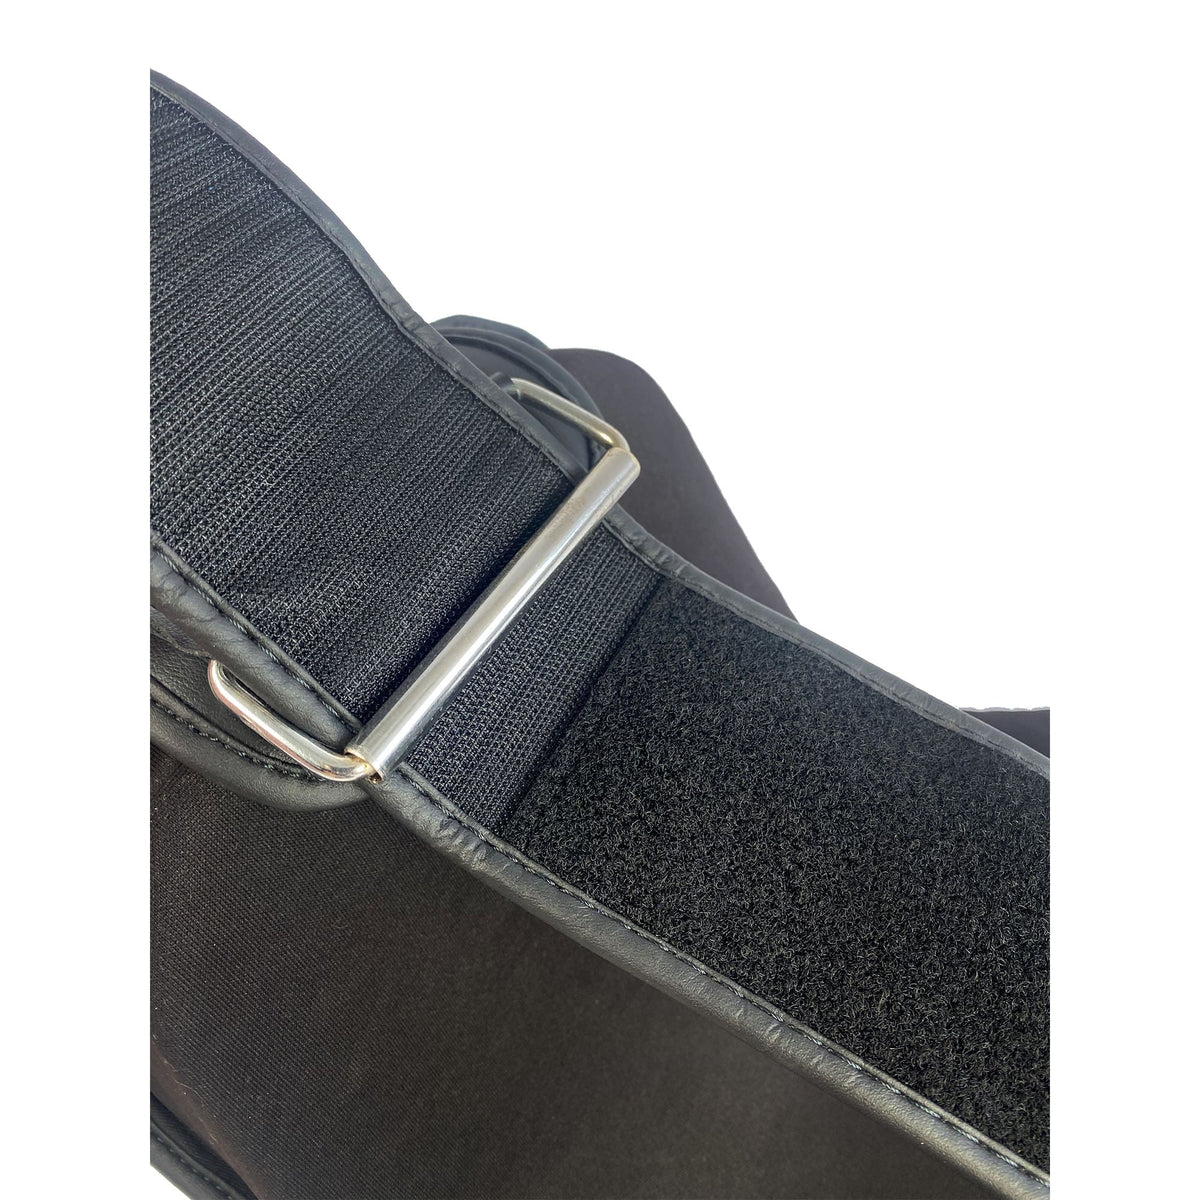 Nahaufnahme eines breiten, langen Klettverschlusses mit Metallbügel für die Größenverstellung, bietet universelle Passform.